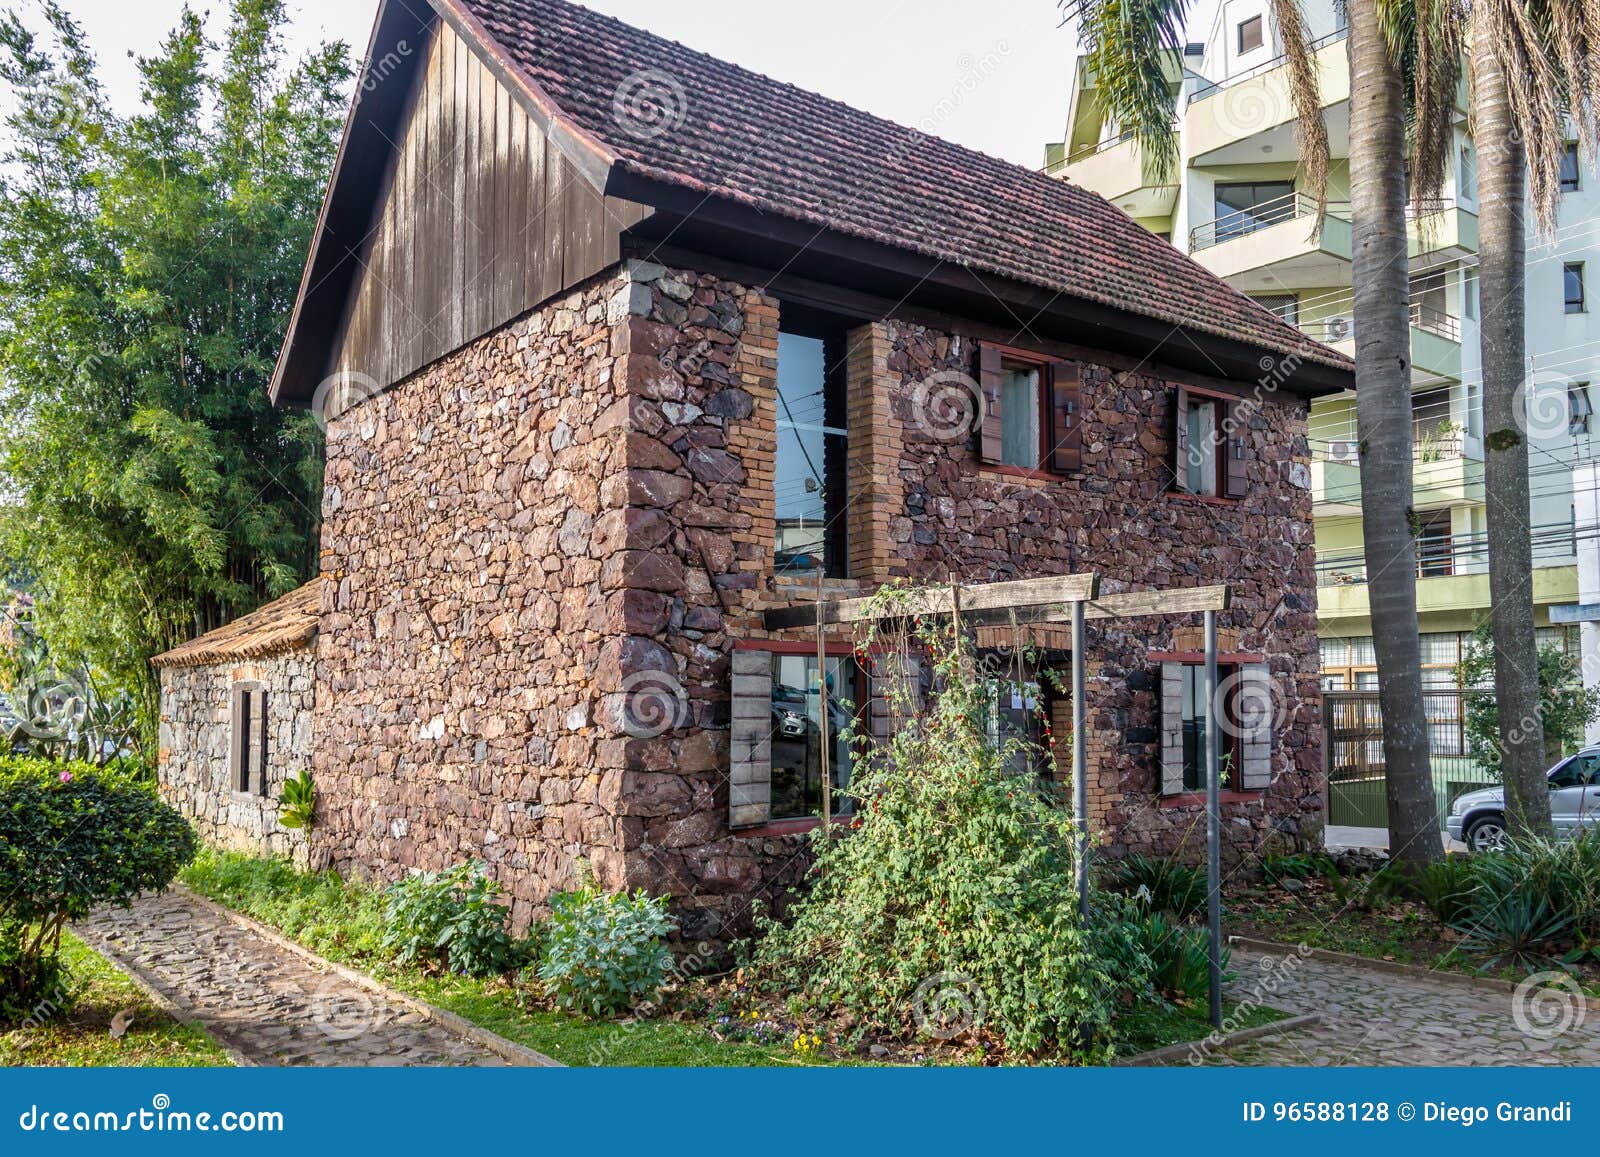 casa de pedra museum - 19th century stone house - caxias do sul, rio grande do sul